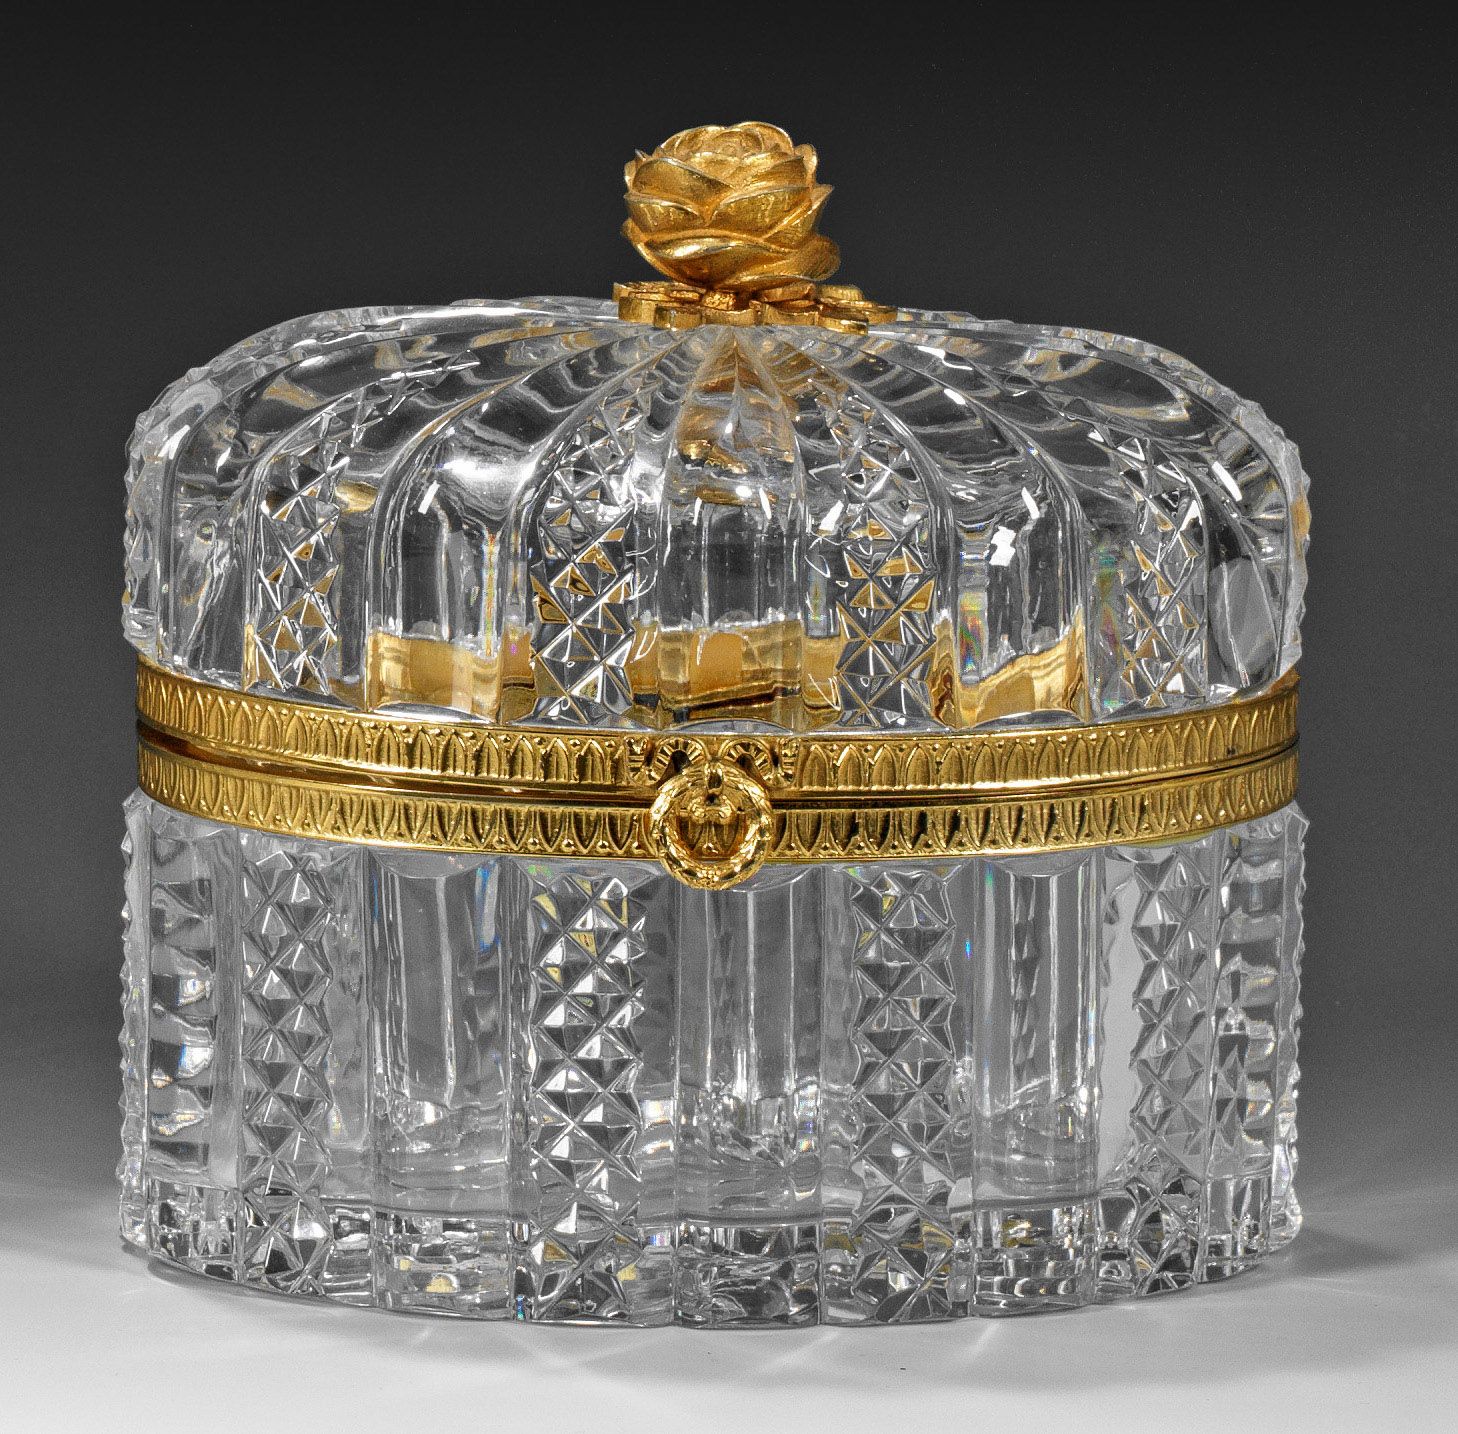 Null Zierdose mit Rosenknauf im Louis-XVI-Stil Farbloses Kristallglas, reich ges&hellip;